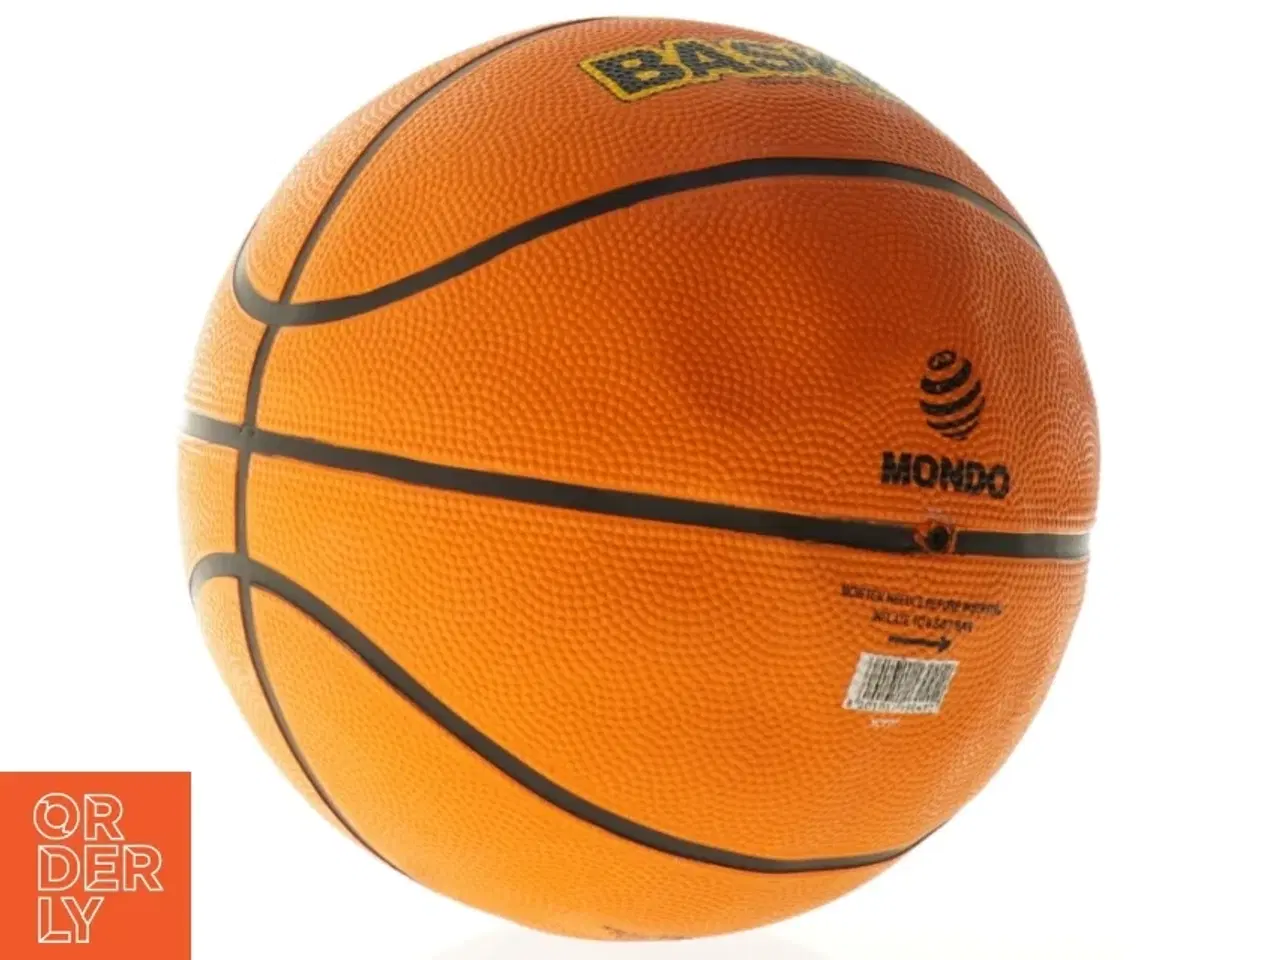 Billede 2 - Basketbold fra MONDO (str. Ø 25 cm)